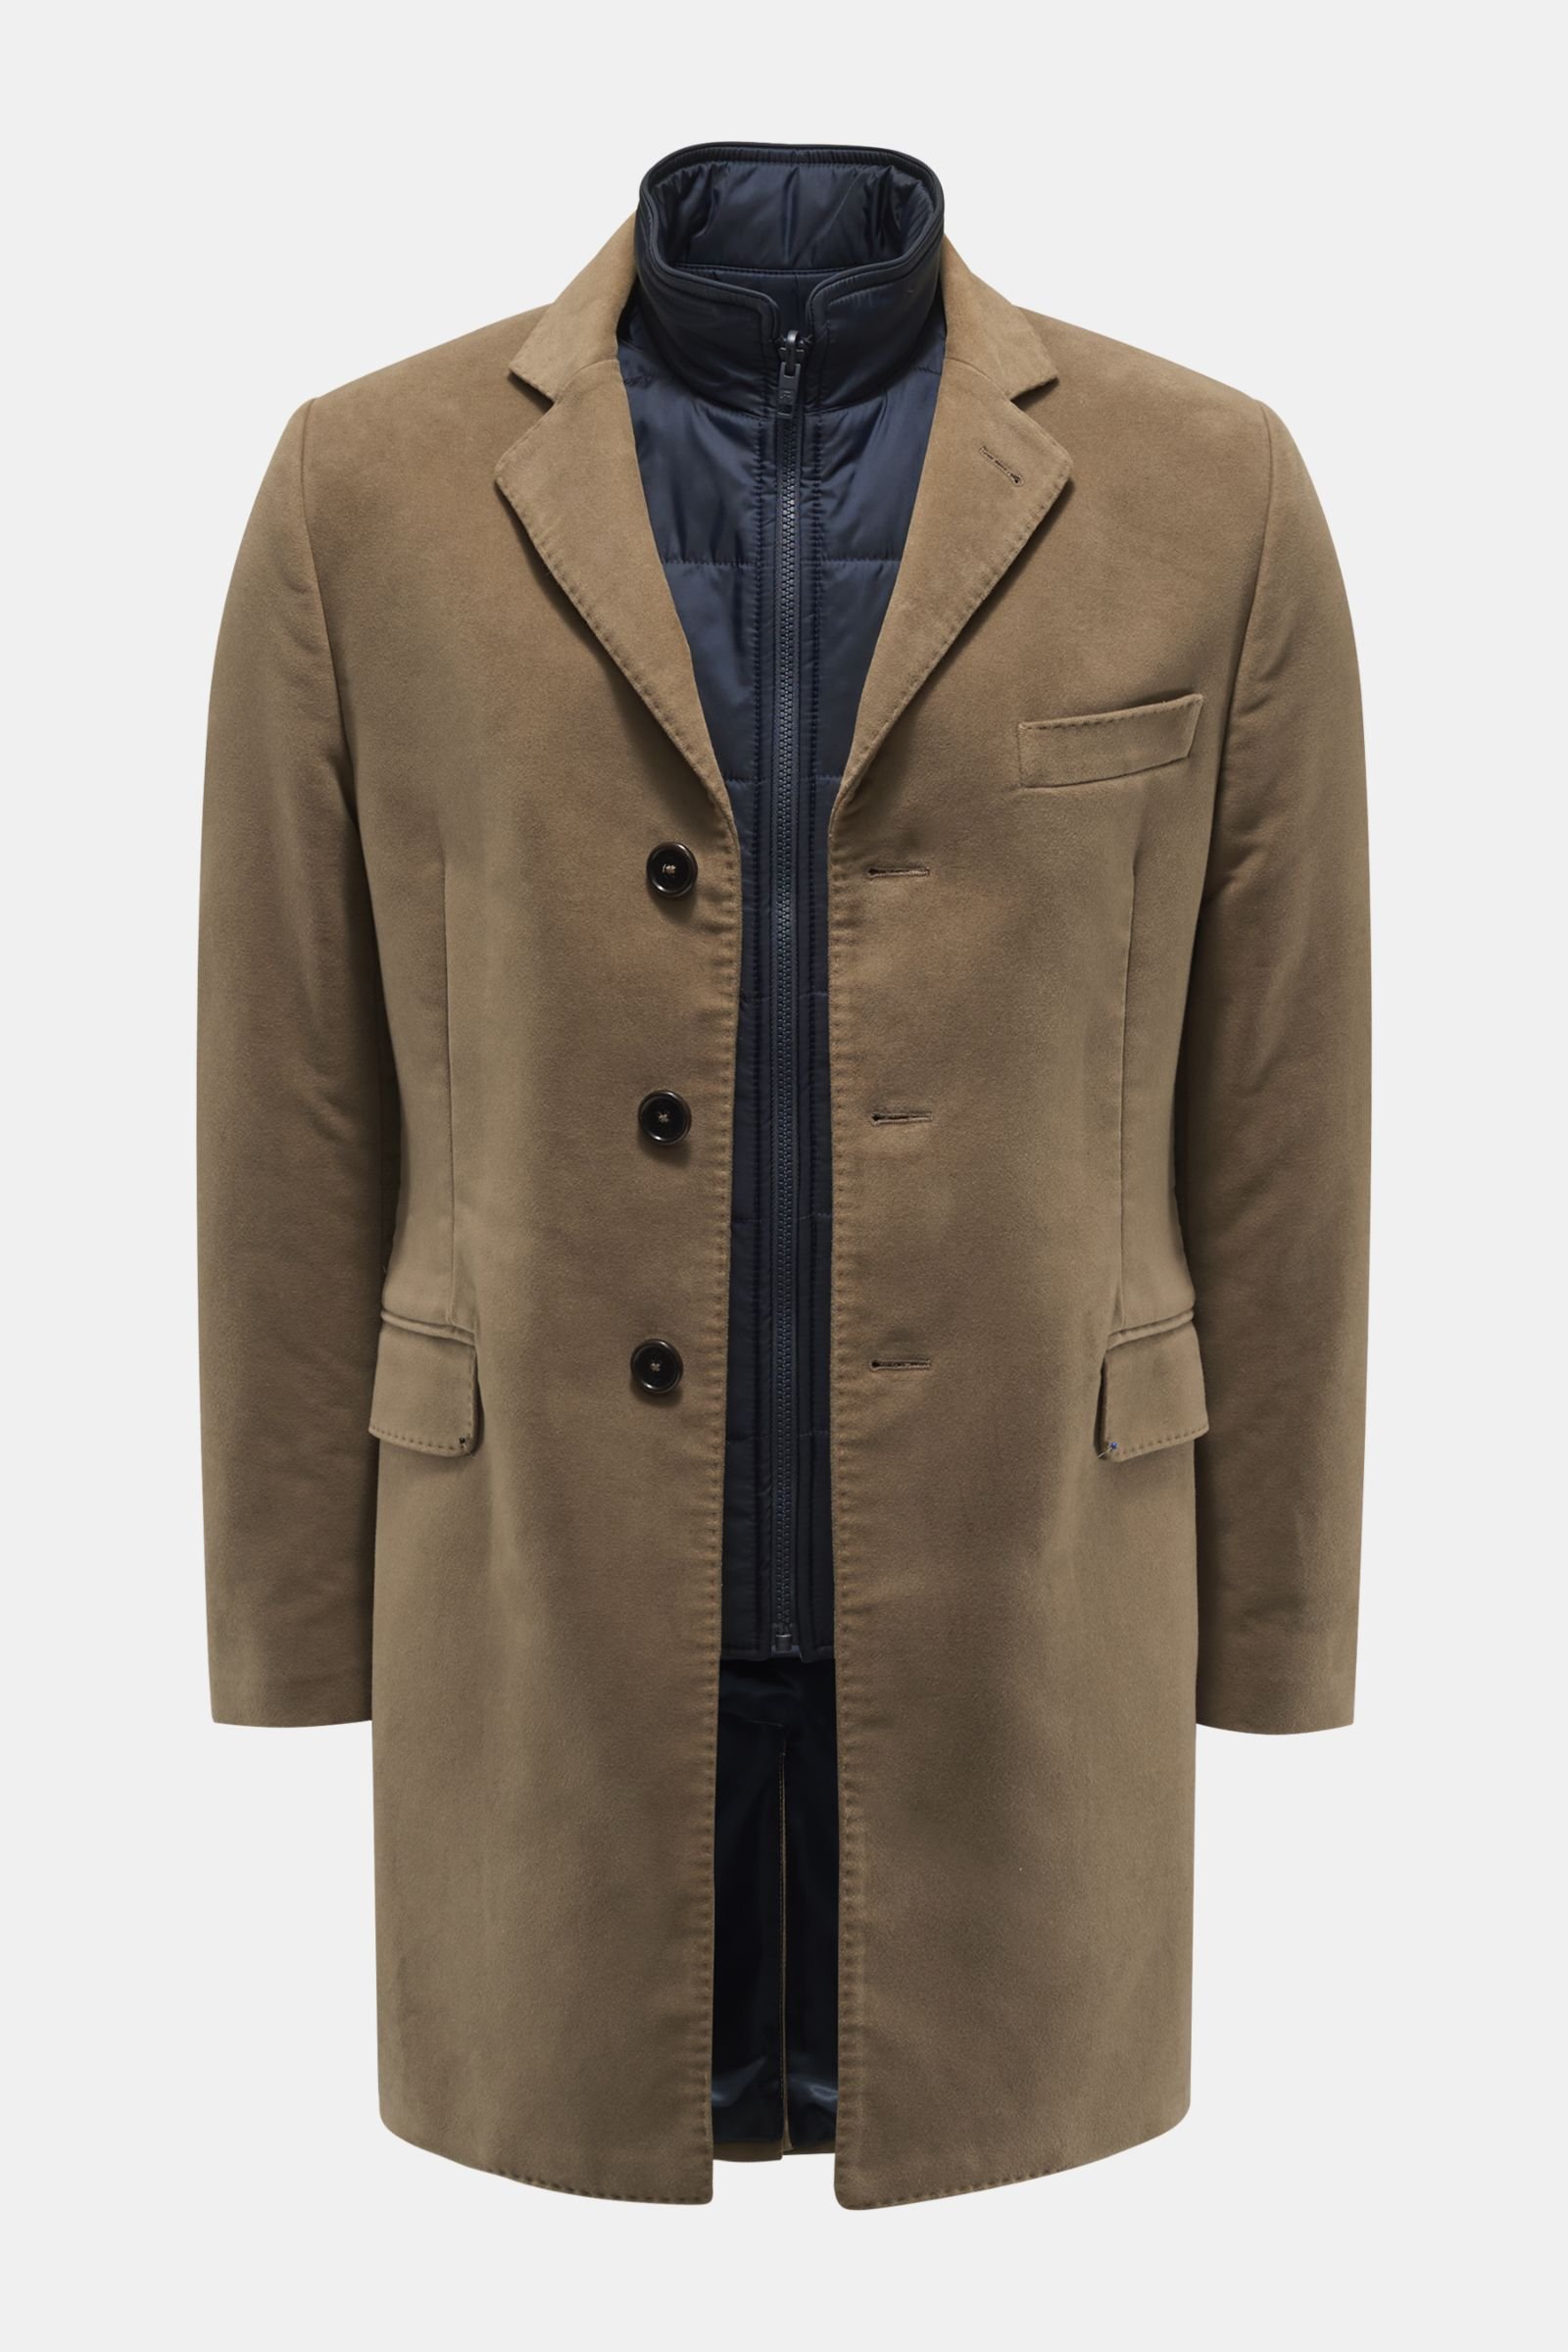 Fustian short coat in khaki